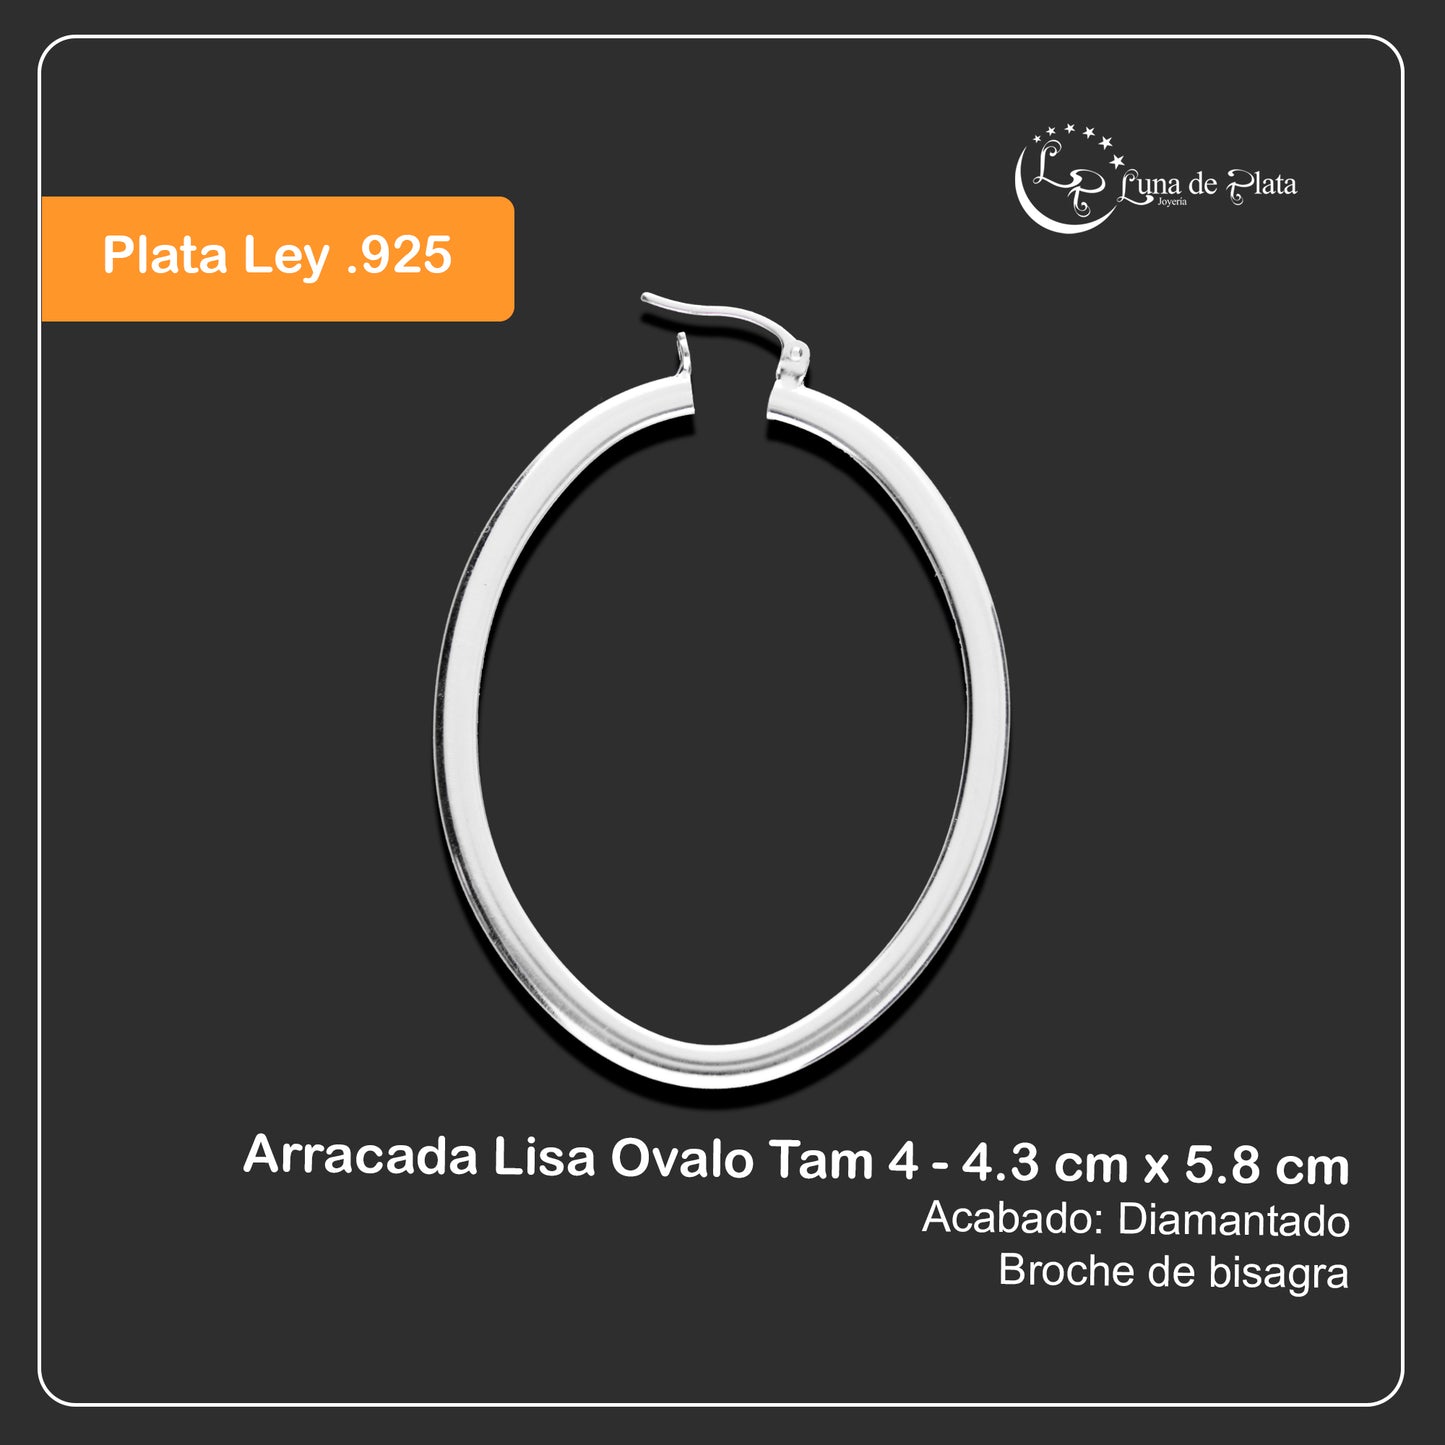 LPAL038 Arracada Lisa Ovalo Tam 4 - 4.3 cm x 5.8 cm Plata .925 2031262399